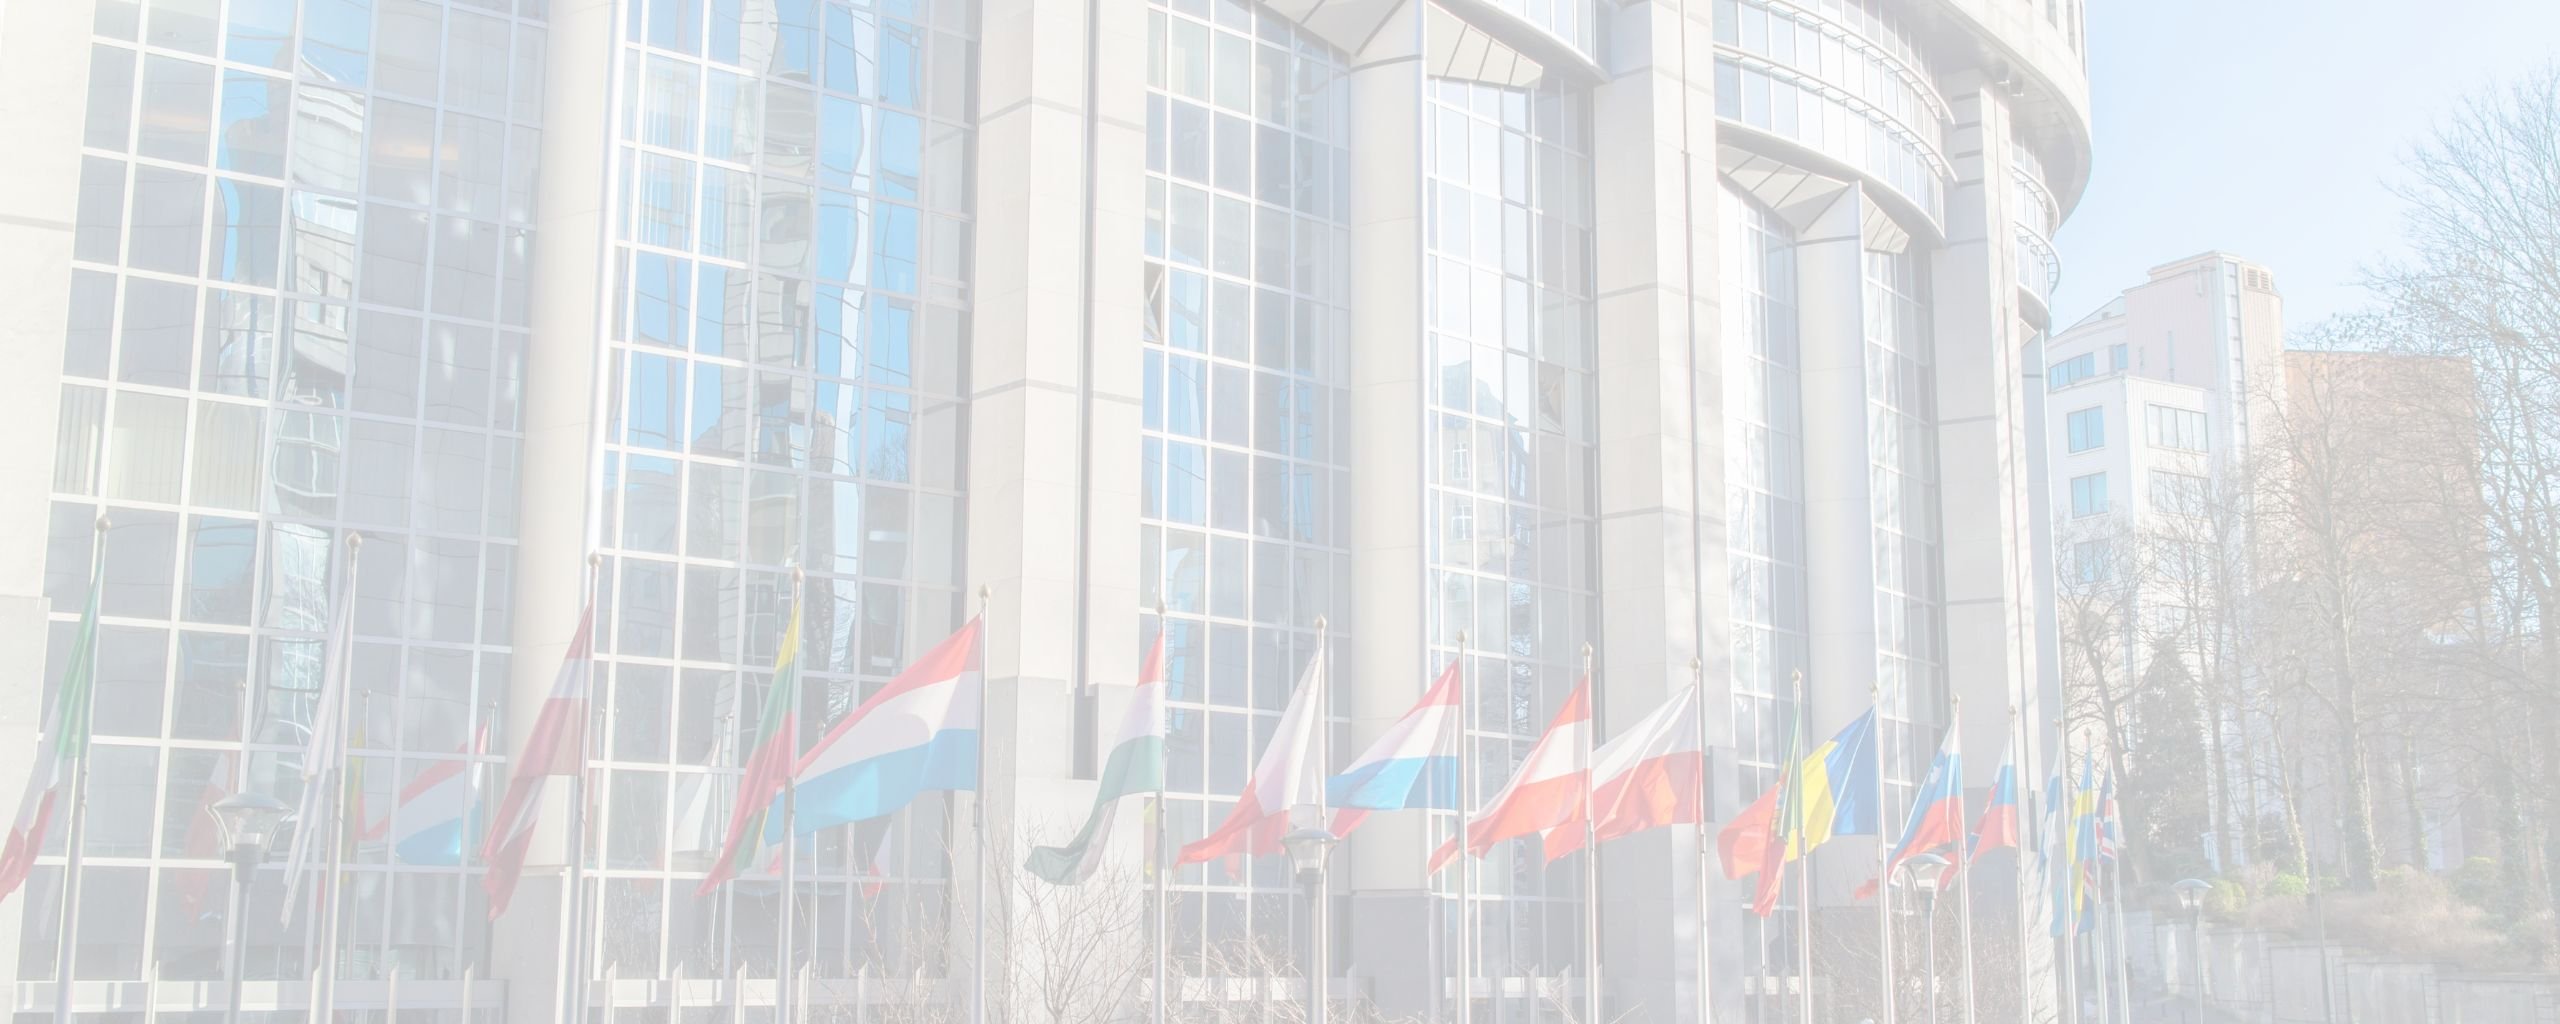 Achtergrondafbeelding Europese verkiezingen uitgelicht, foto van het Europees Parlement met de Europese vlaggen